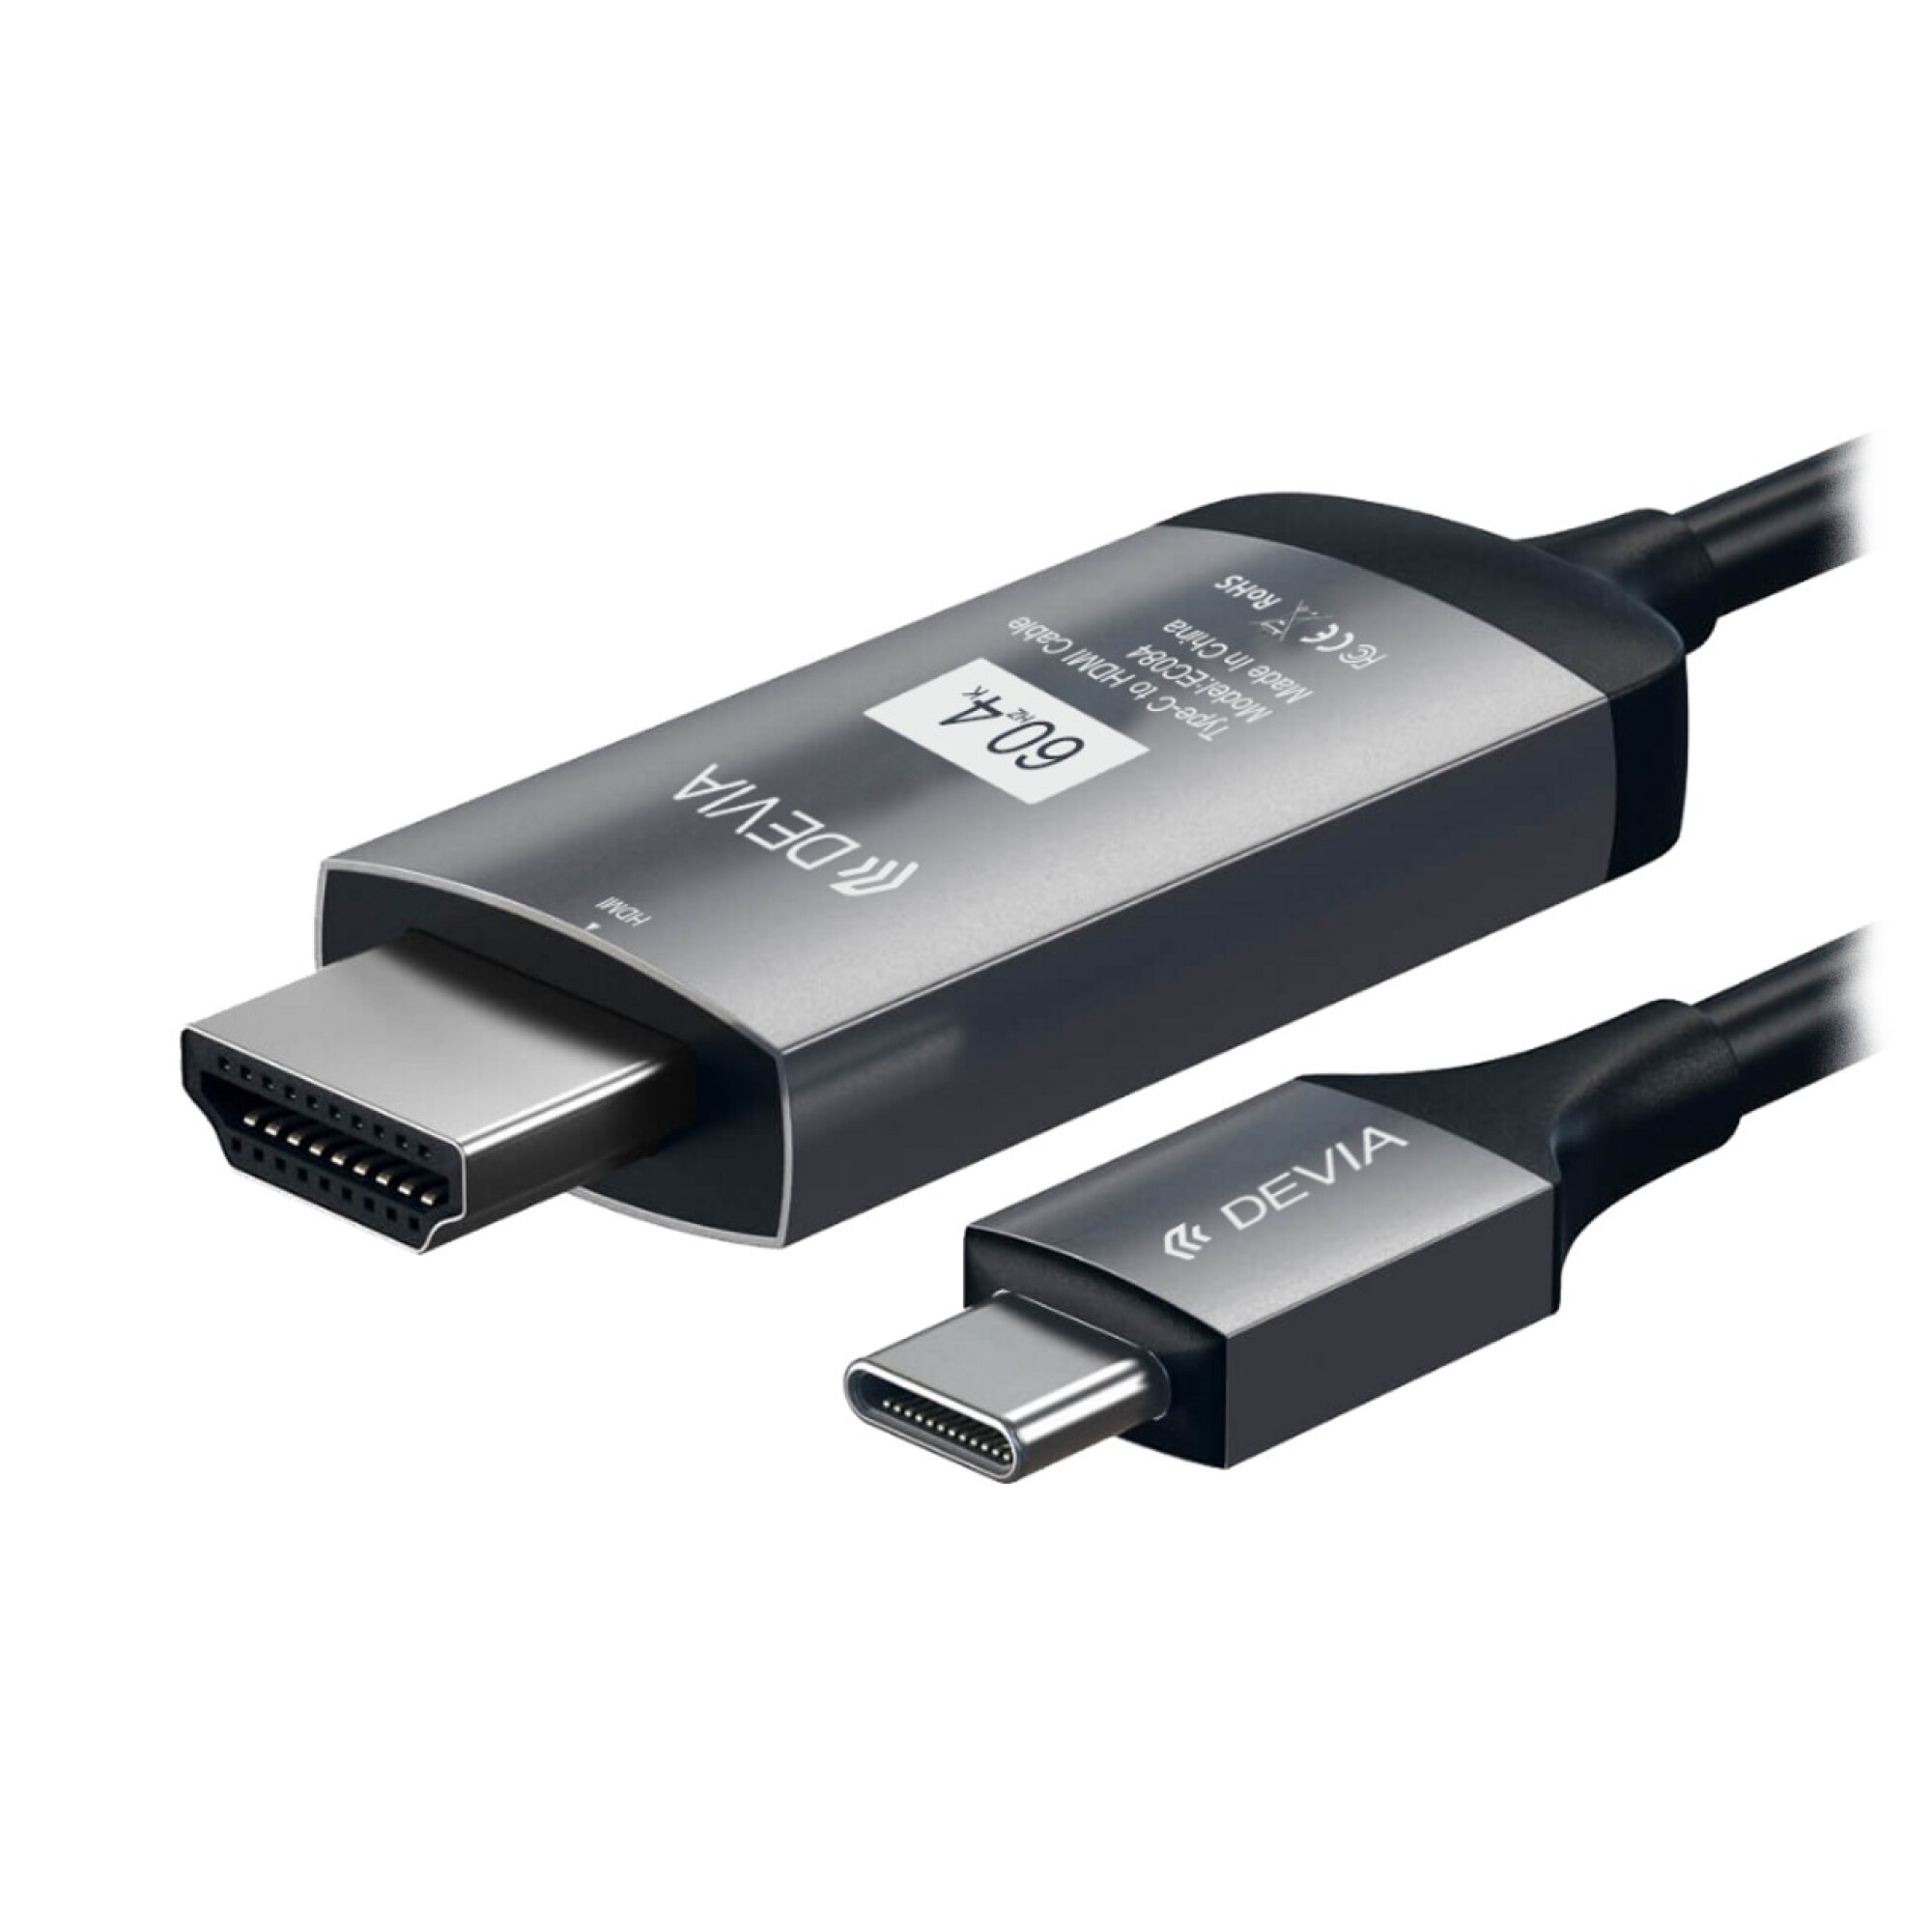 ADAPTADOR USB-C A USB-C Y JACK 3.5MM PARA AURICULARES Y CARGA DEVIA -  Blanco — Cover company